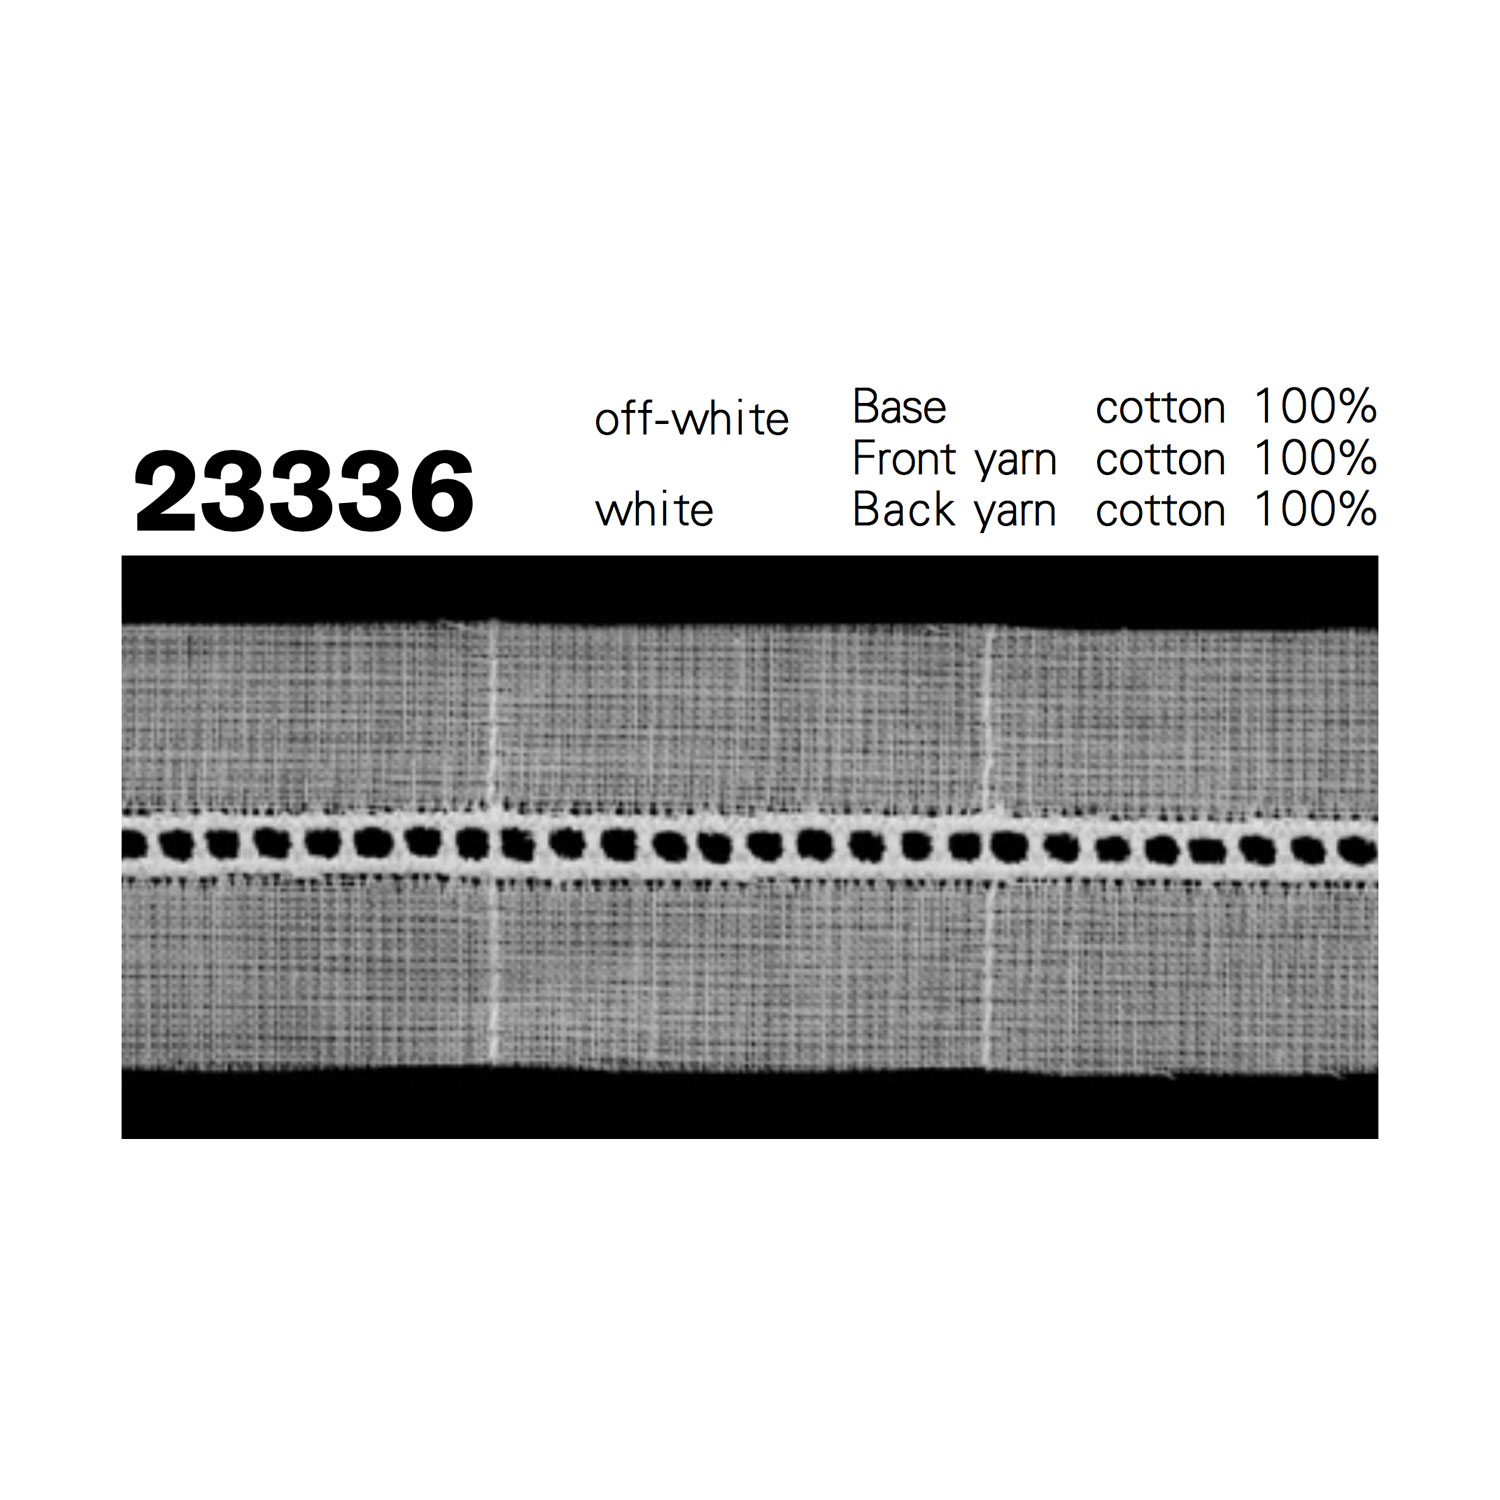 23336 Cotton Fine Insertion Lace Kyowa Lace